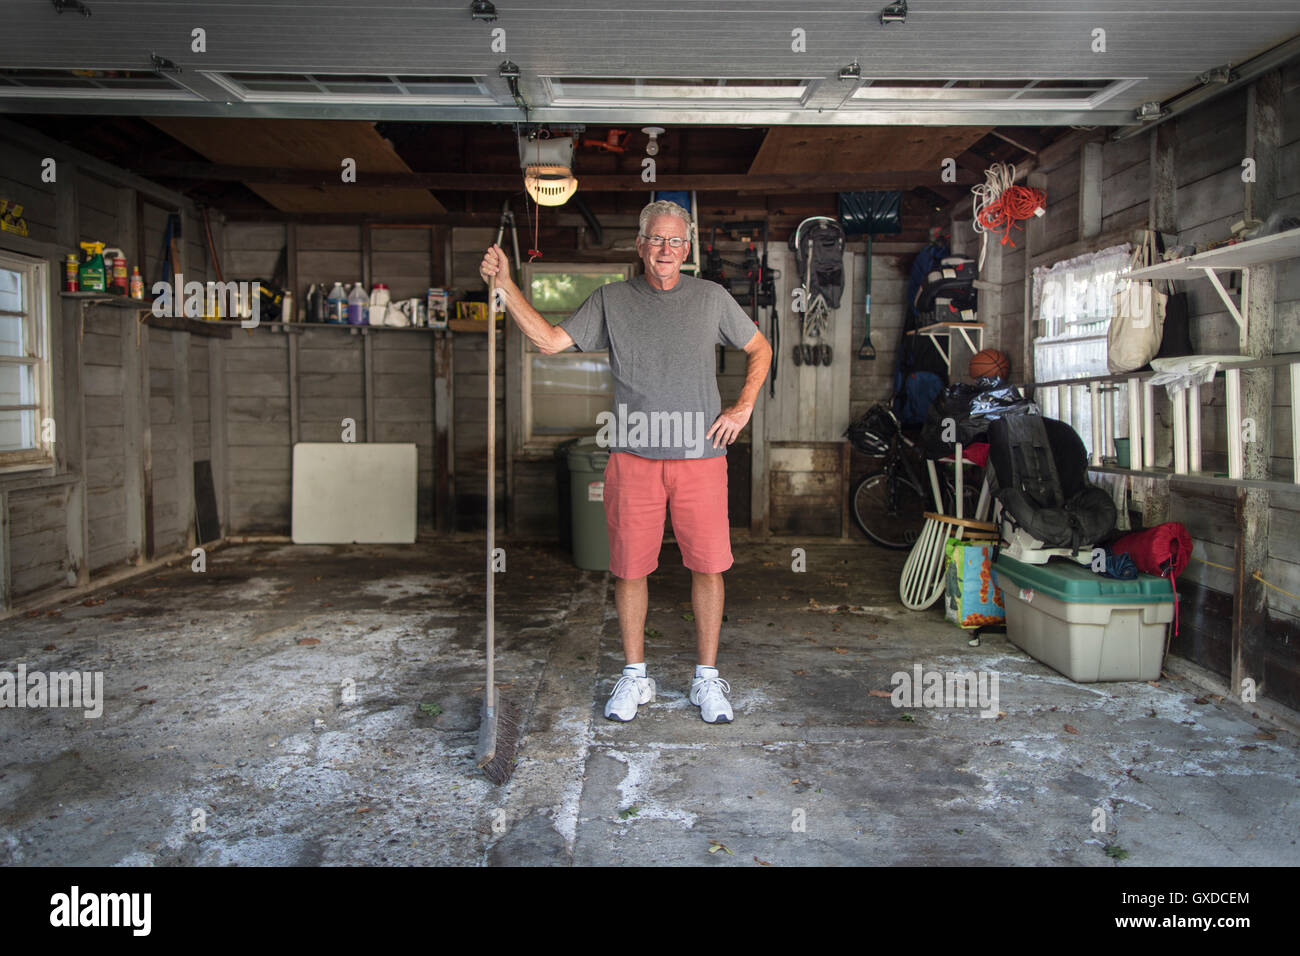 Portrait of senior man standing in garage holding broom Banque D'Images